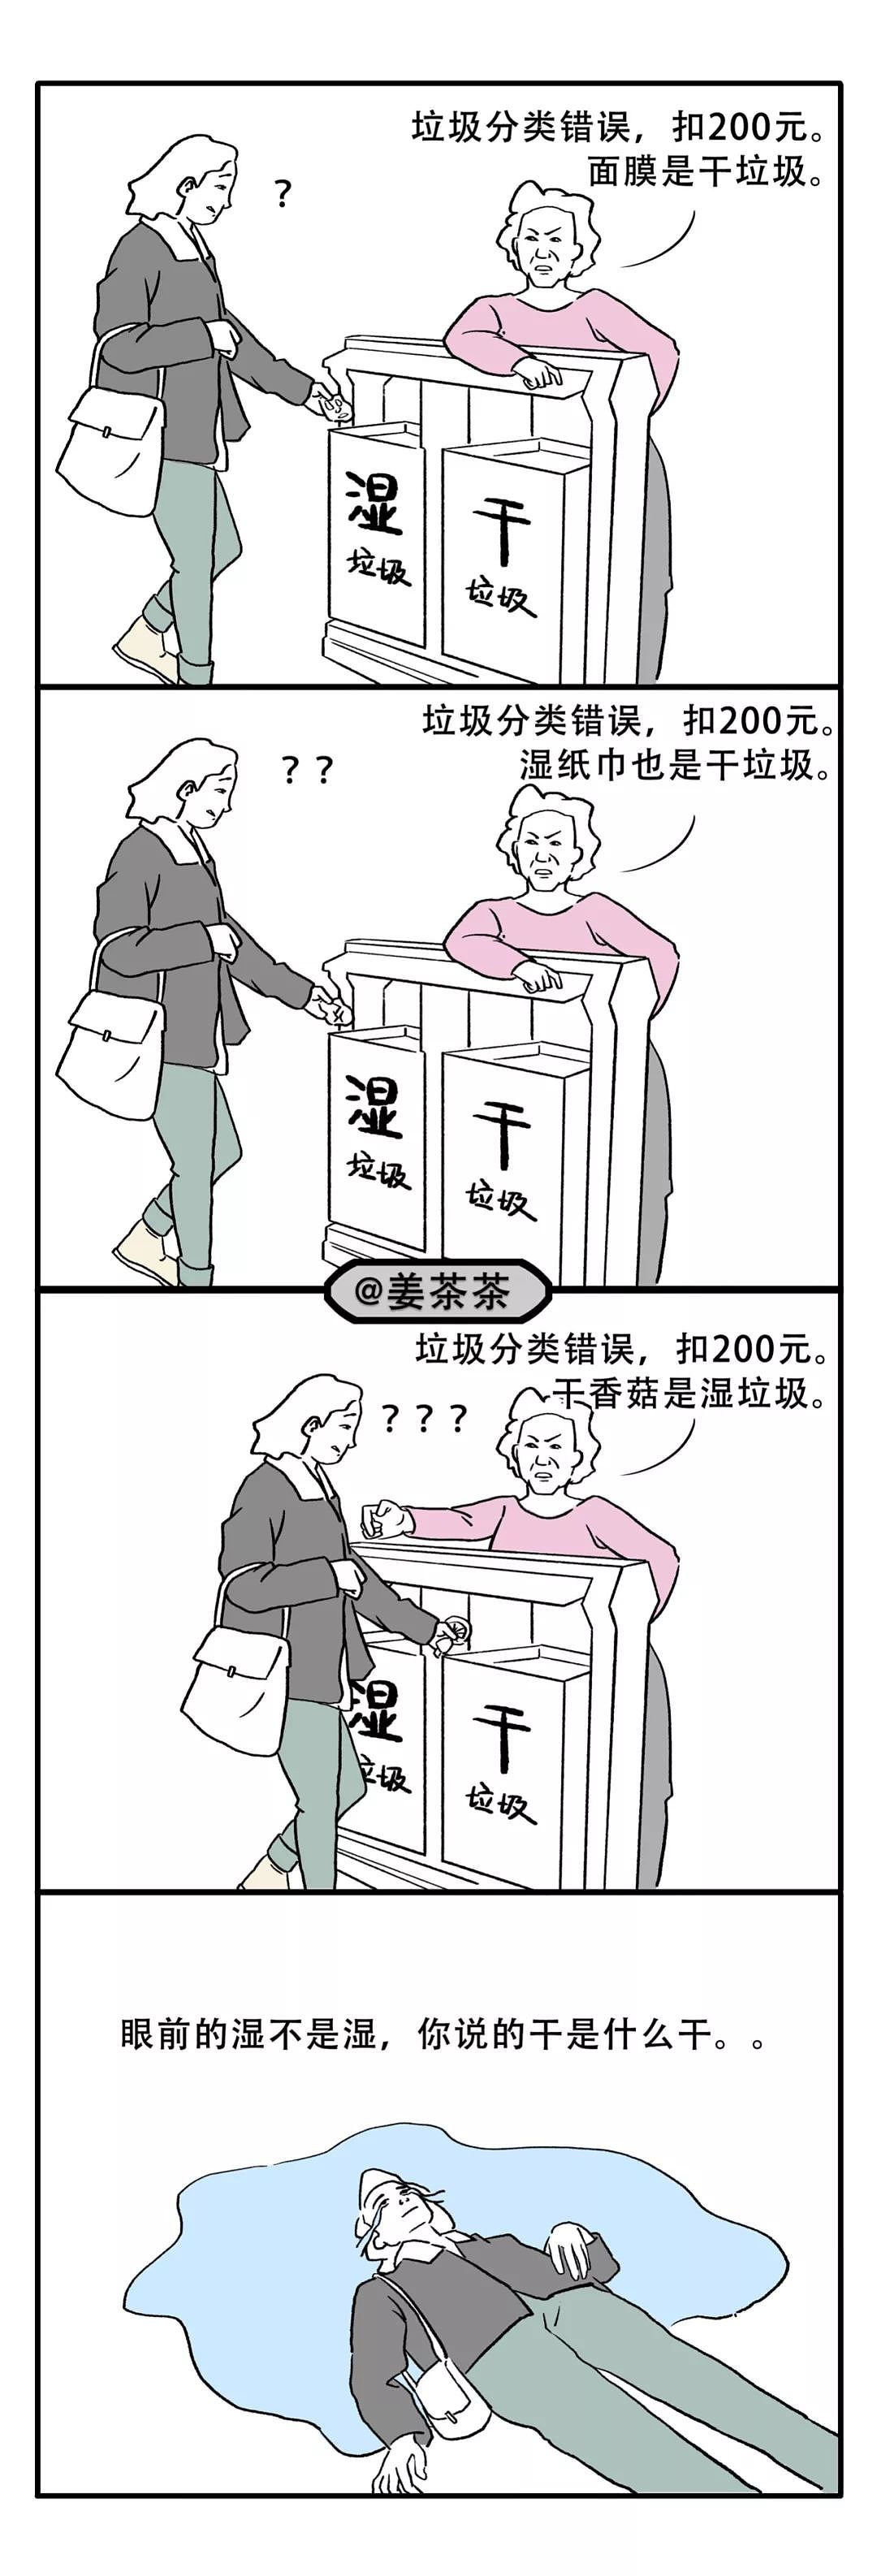 朋友圈的上海人都被垃圾分类逼疯了 - 11